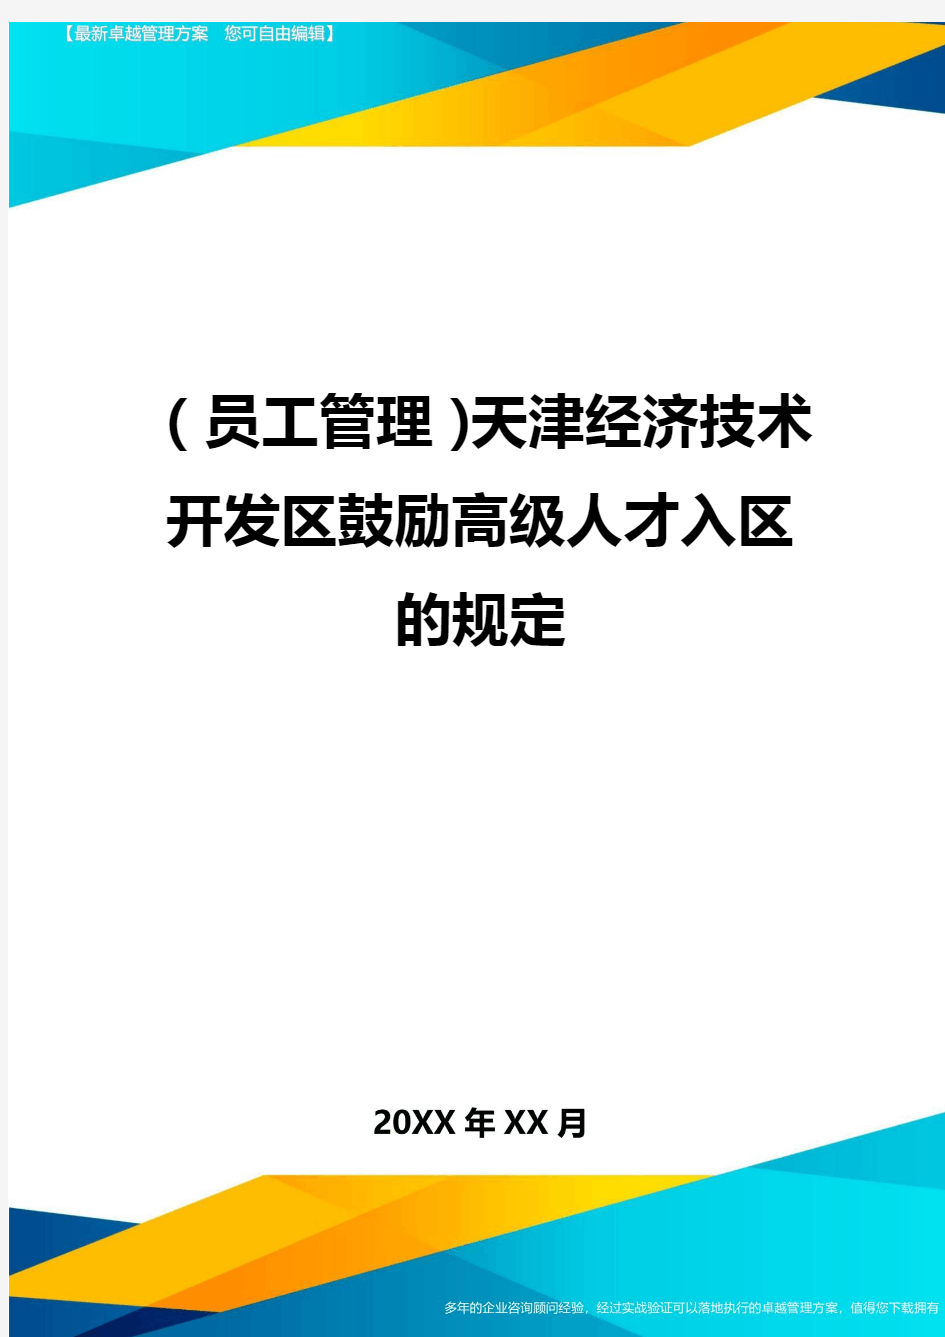 员工管理天津经济技术开发区鼓励高级人才入区的规定